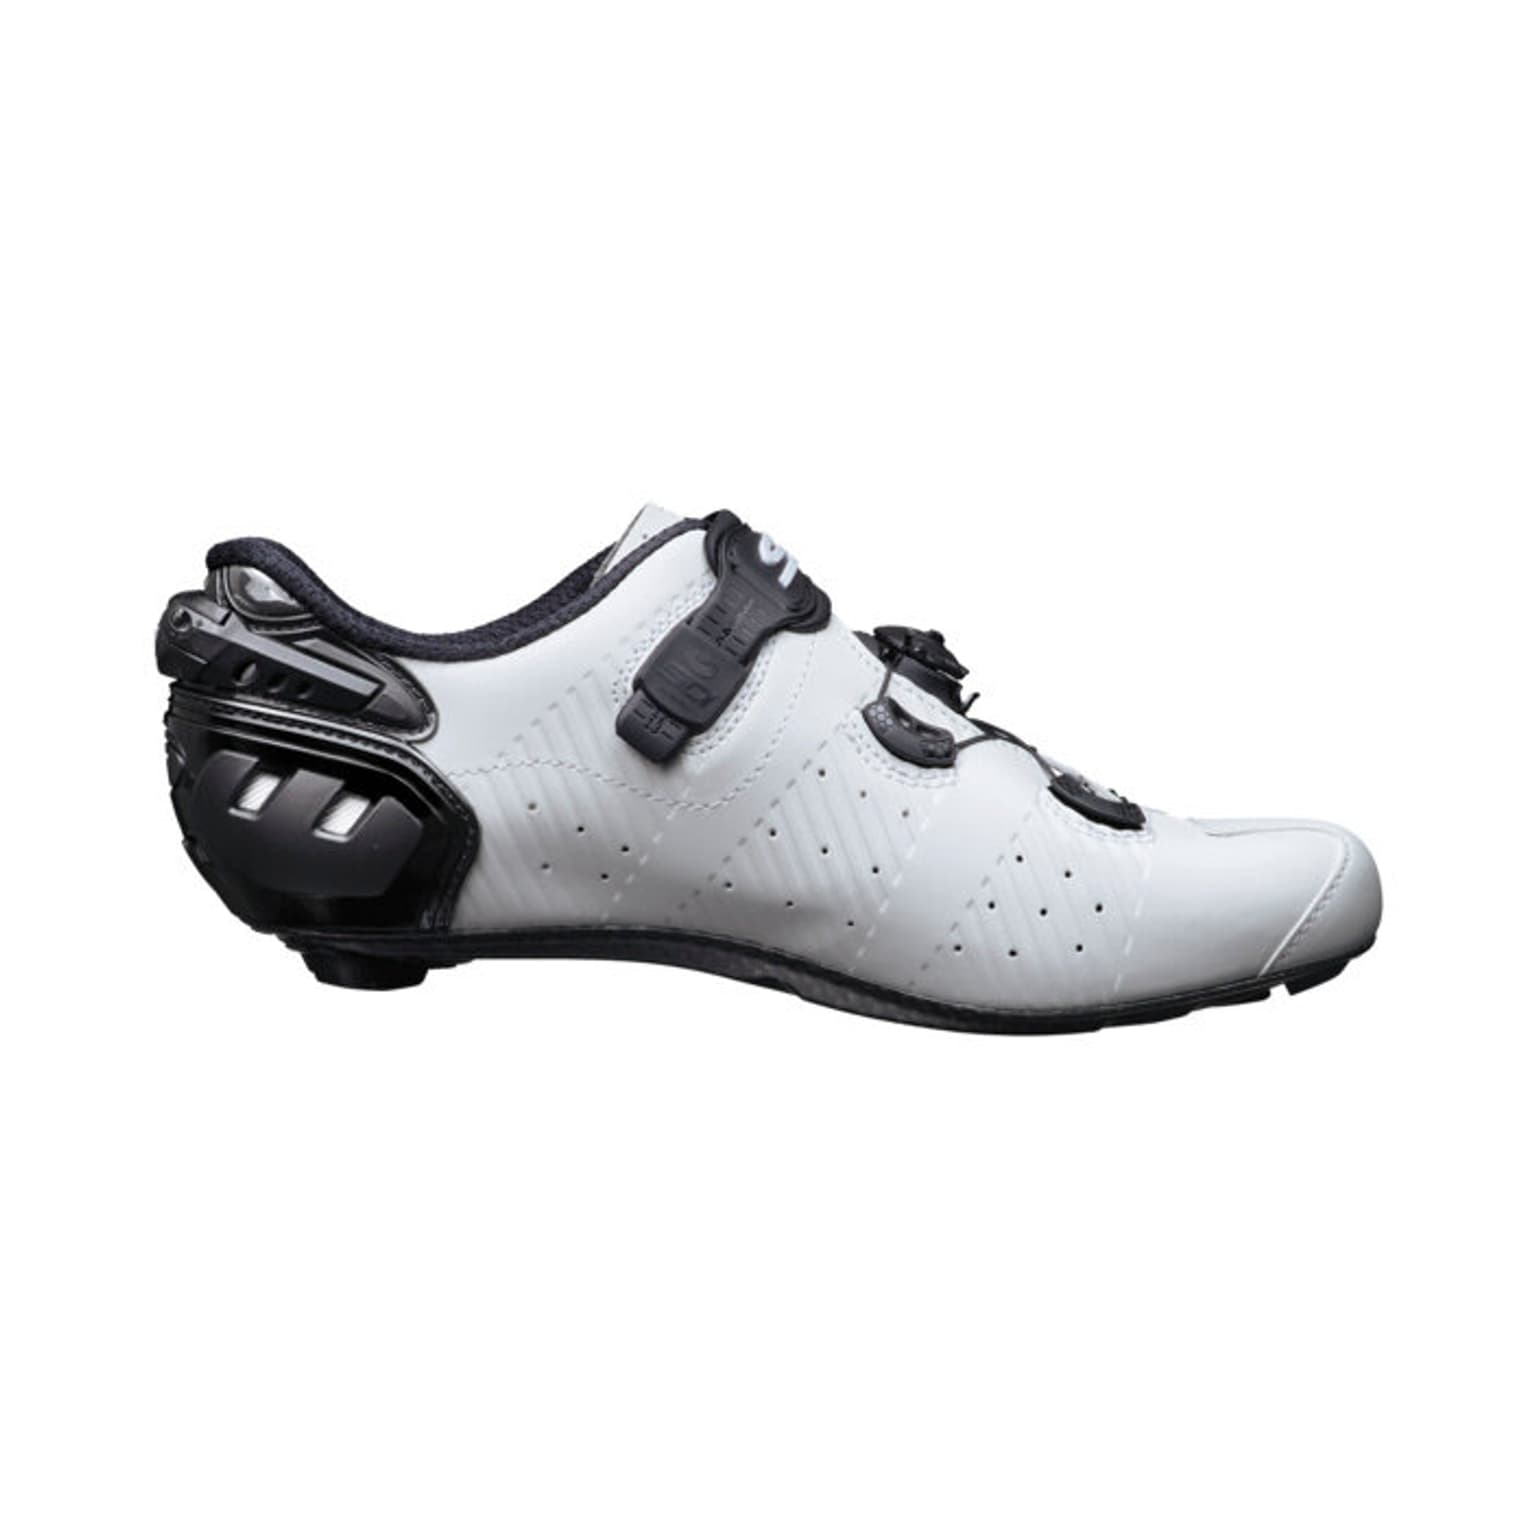 SIDI RR Wire 2S Carbon Chaussures de cyclisme blanc 2